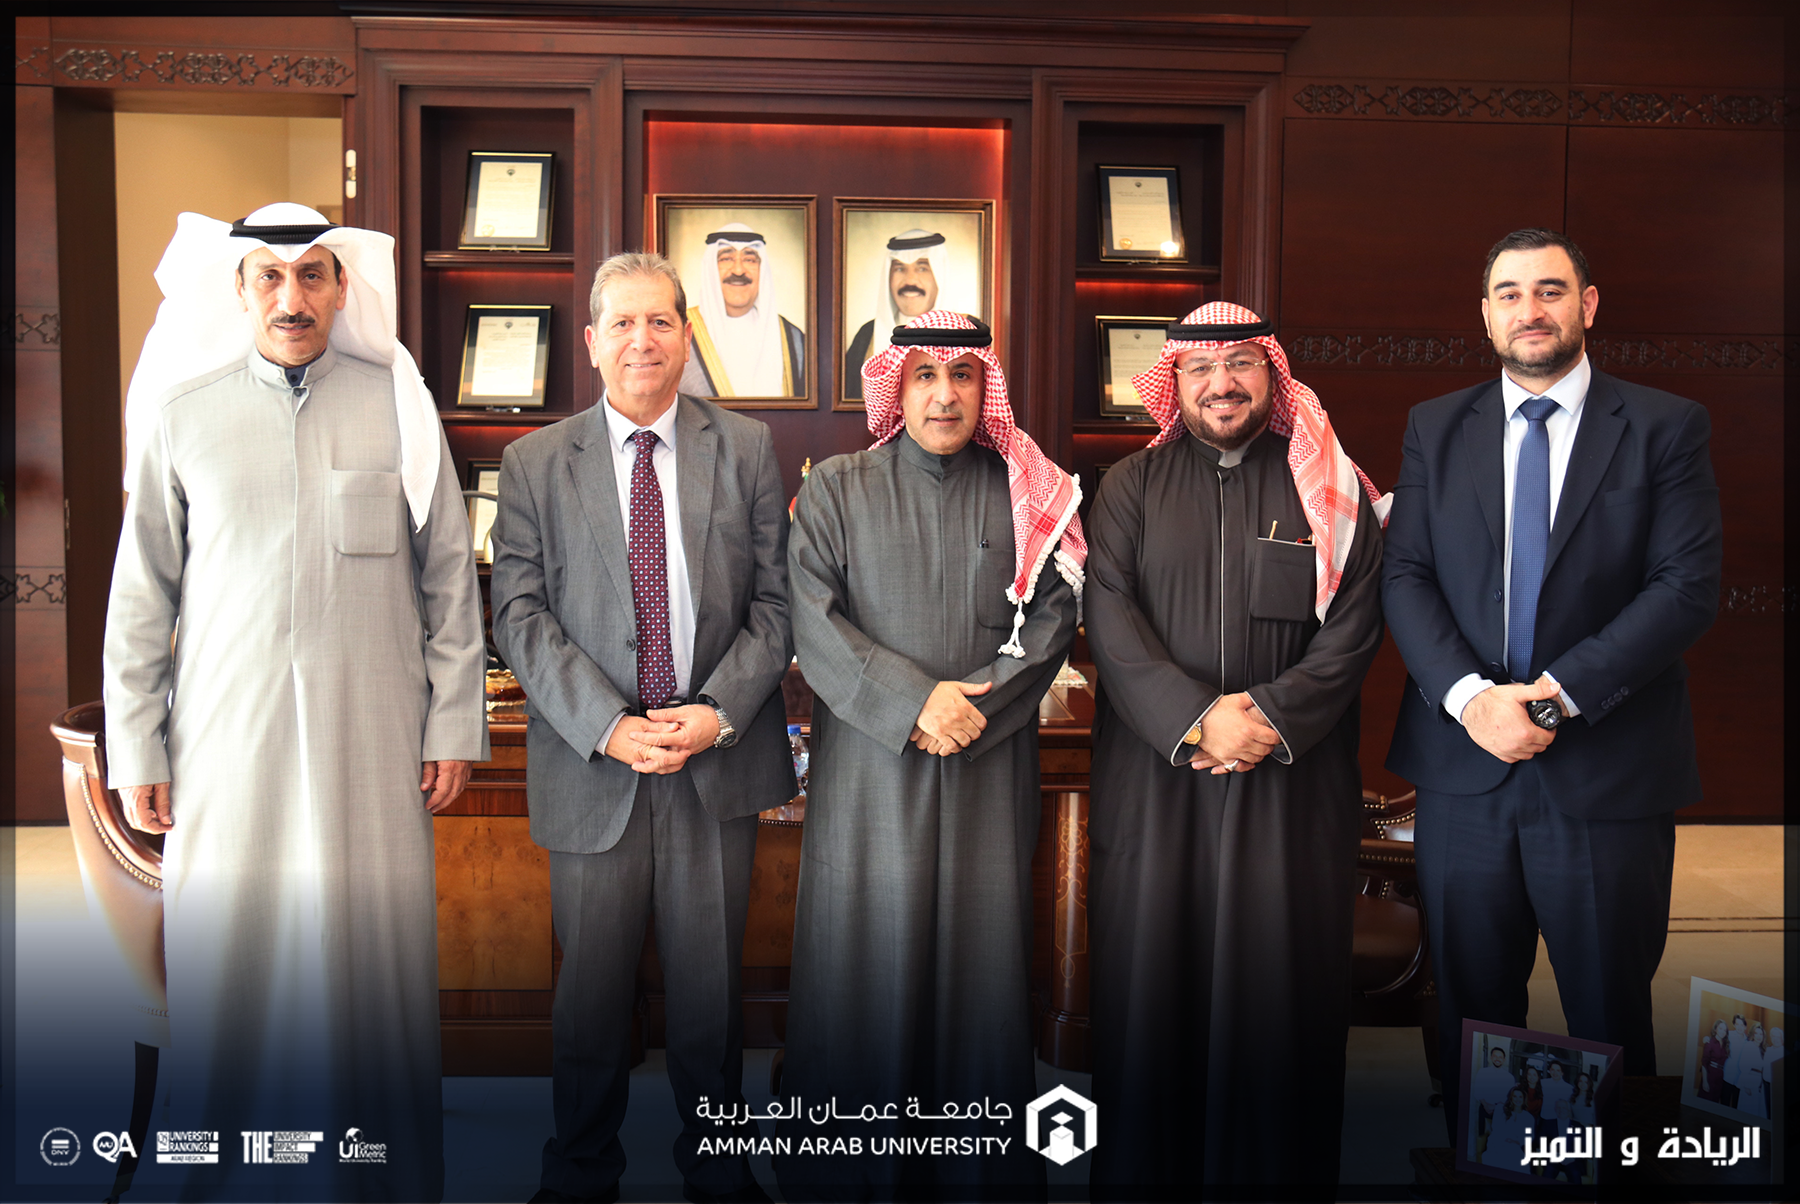 السفير الكويتي يستقبل رئيس "عمّان العربية " لبحث سبل التعاون المشترك